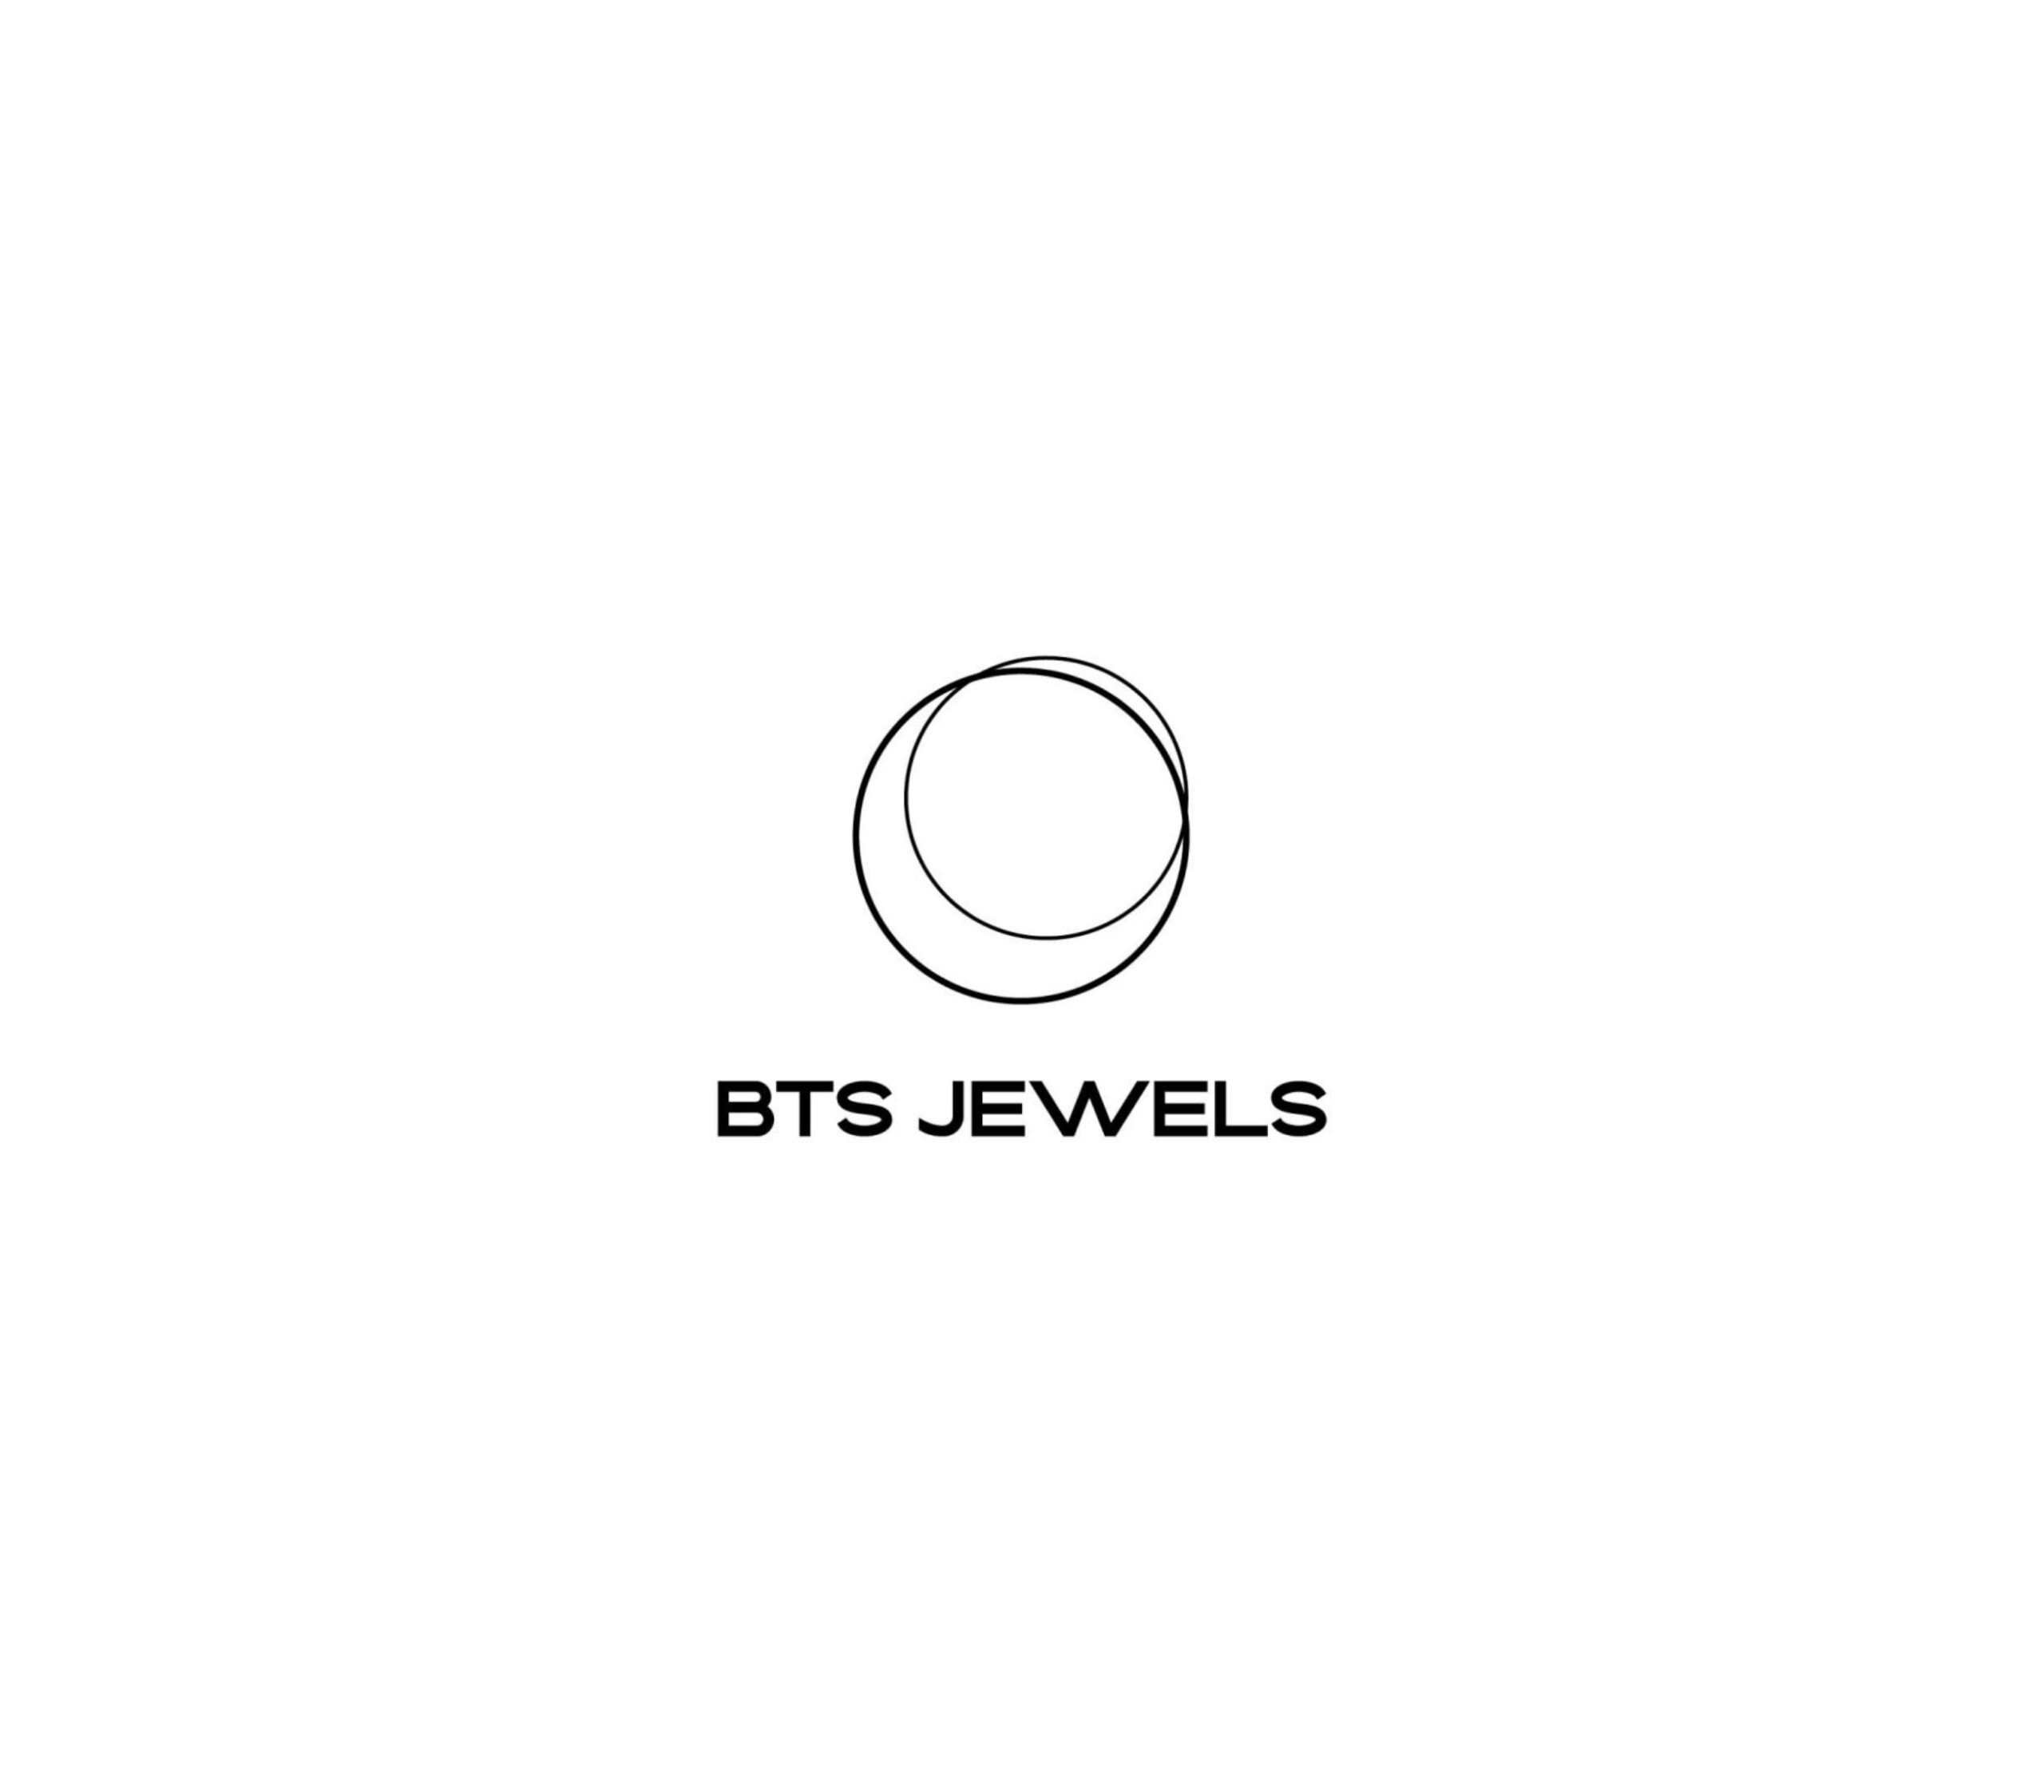 BTS Jewels FORT07 01 0 1804x0